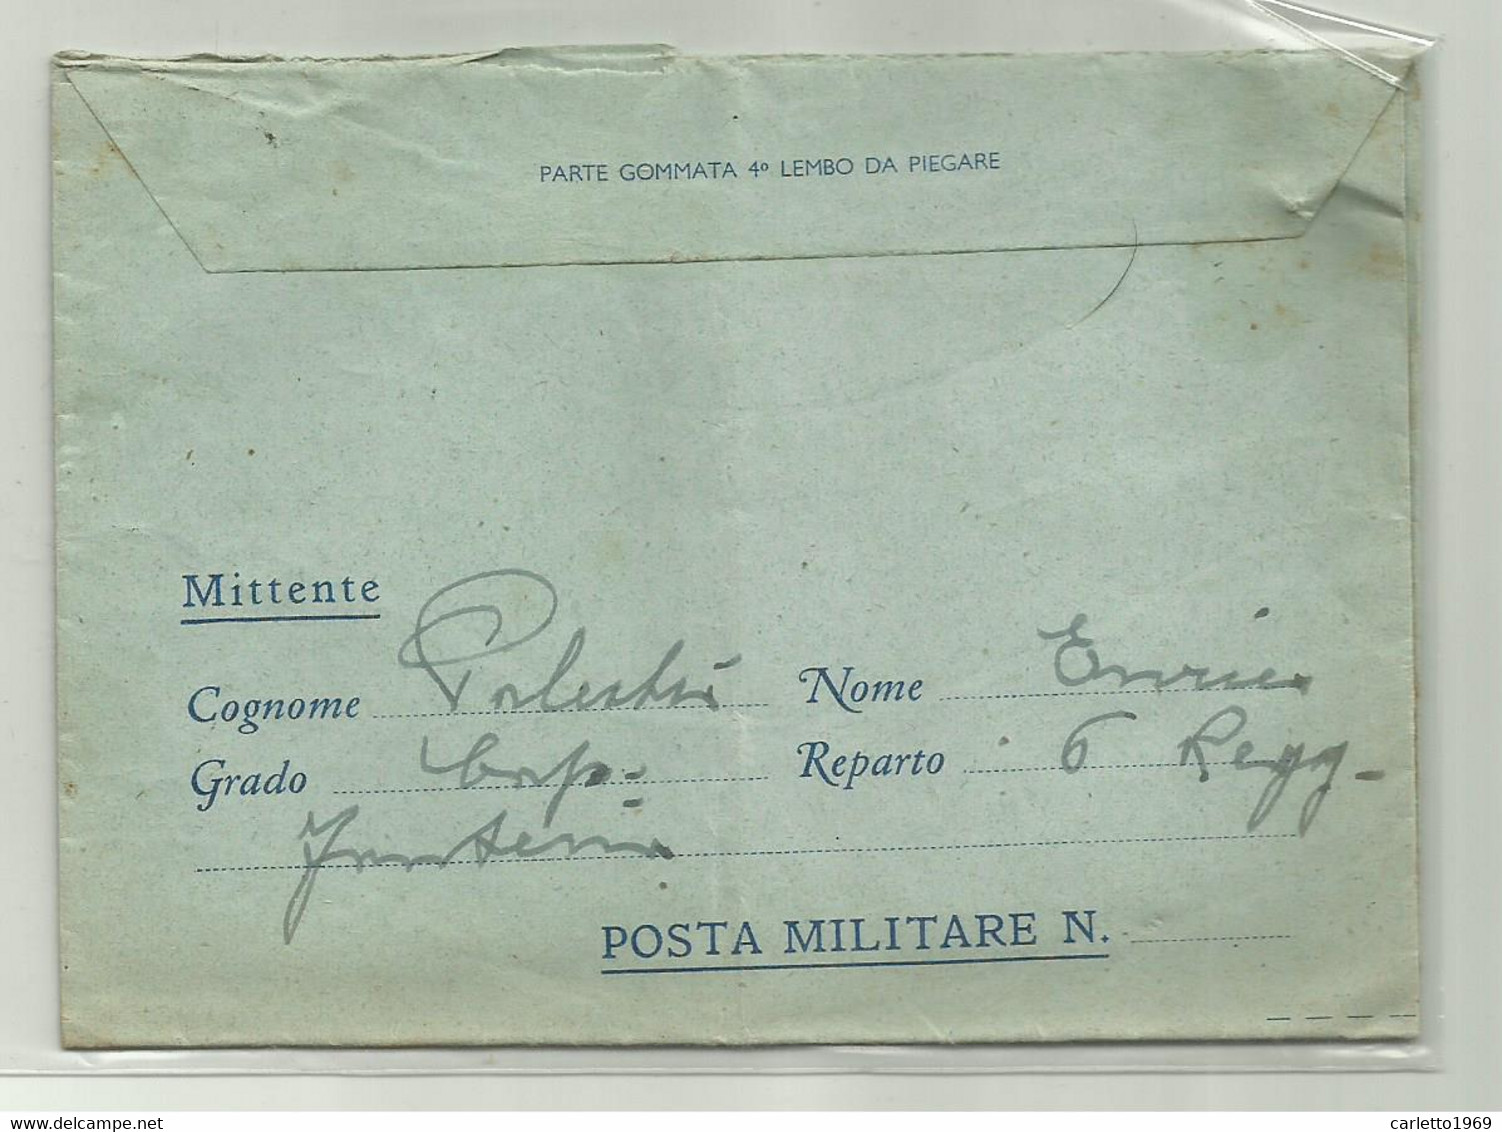 CARTOLINA   POSTALE FORZE ARMATE 6 REGGIMENTO 1943 - Entiers Postaux